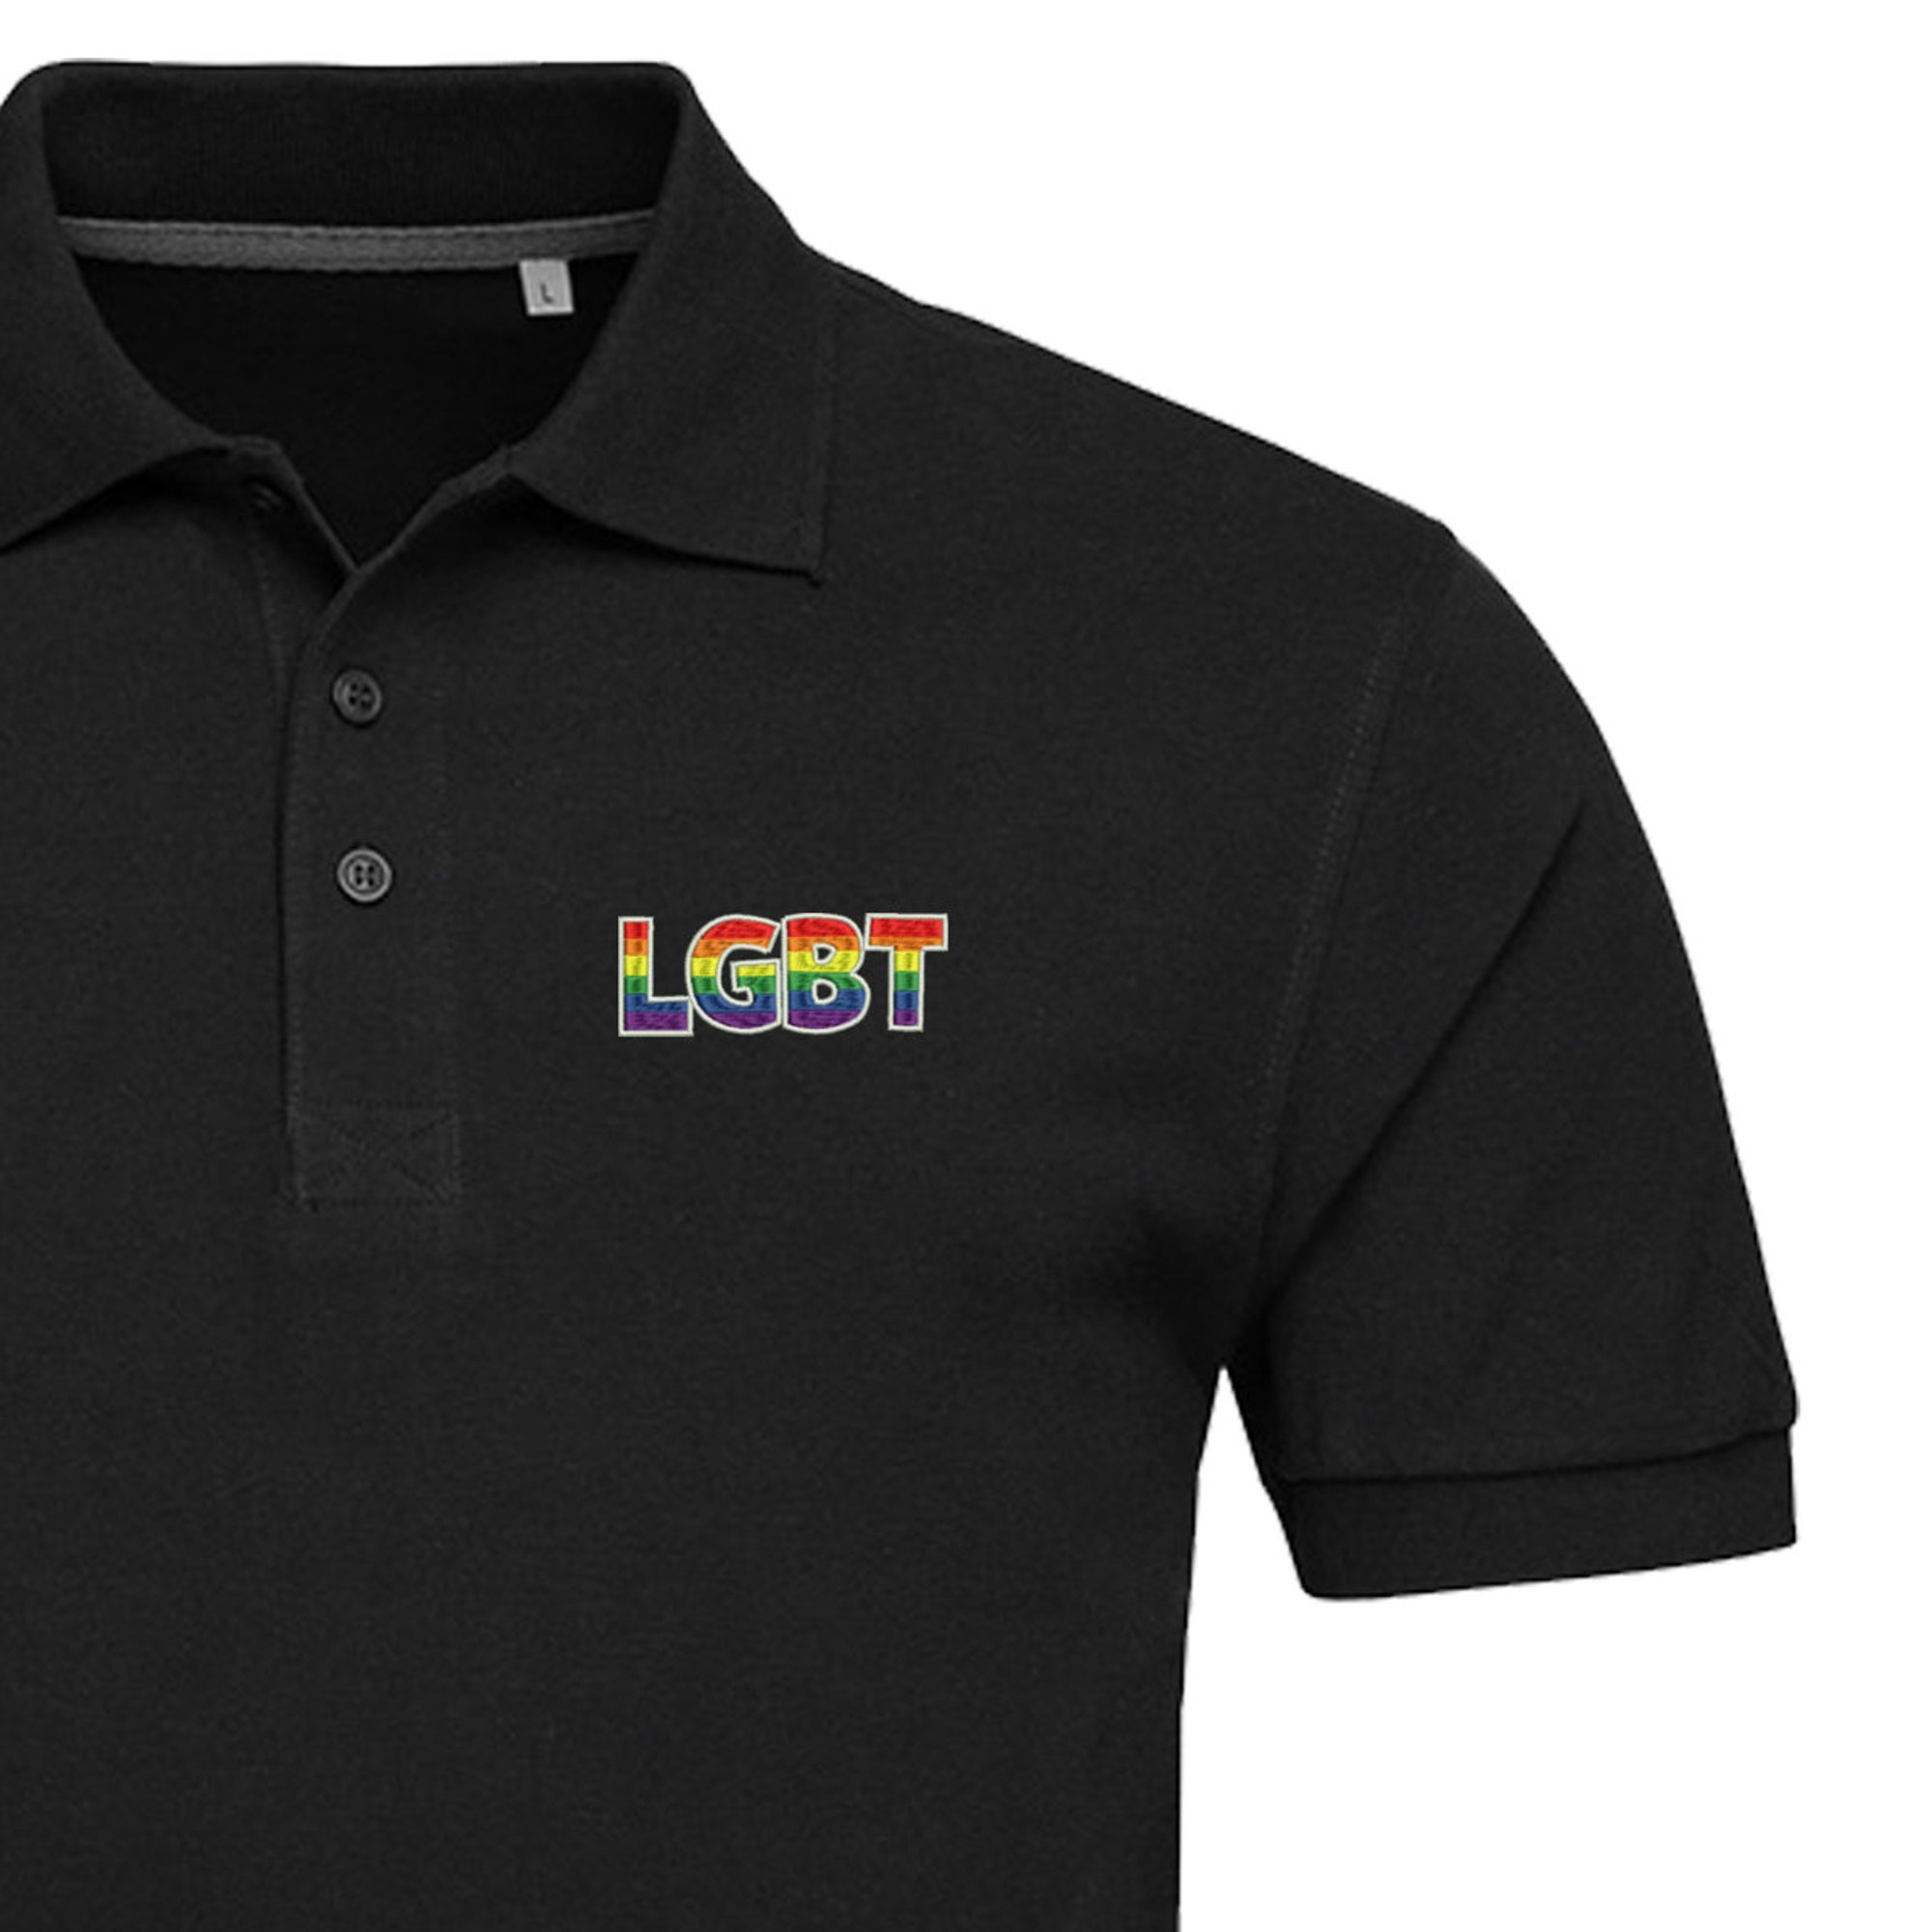 Discover LGBT Polo Shirt For Man | Pride Poloshirt